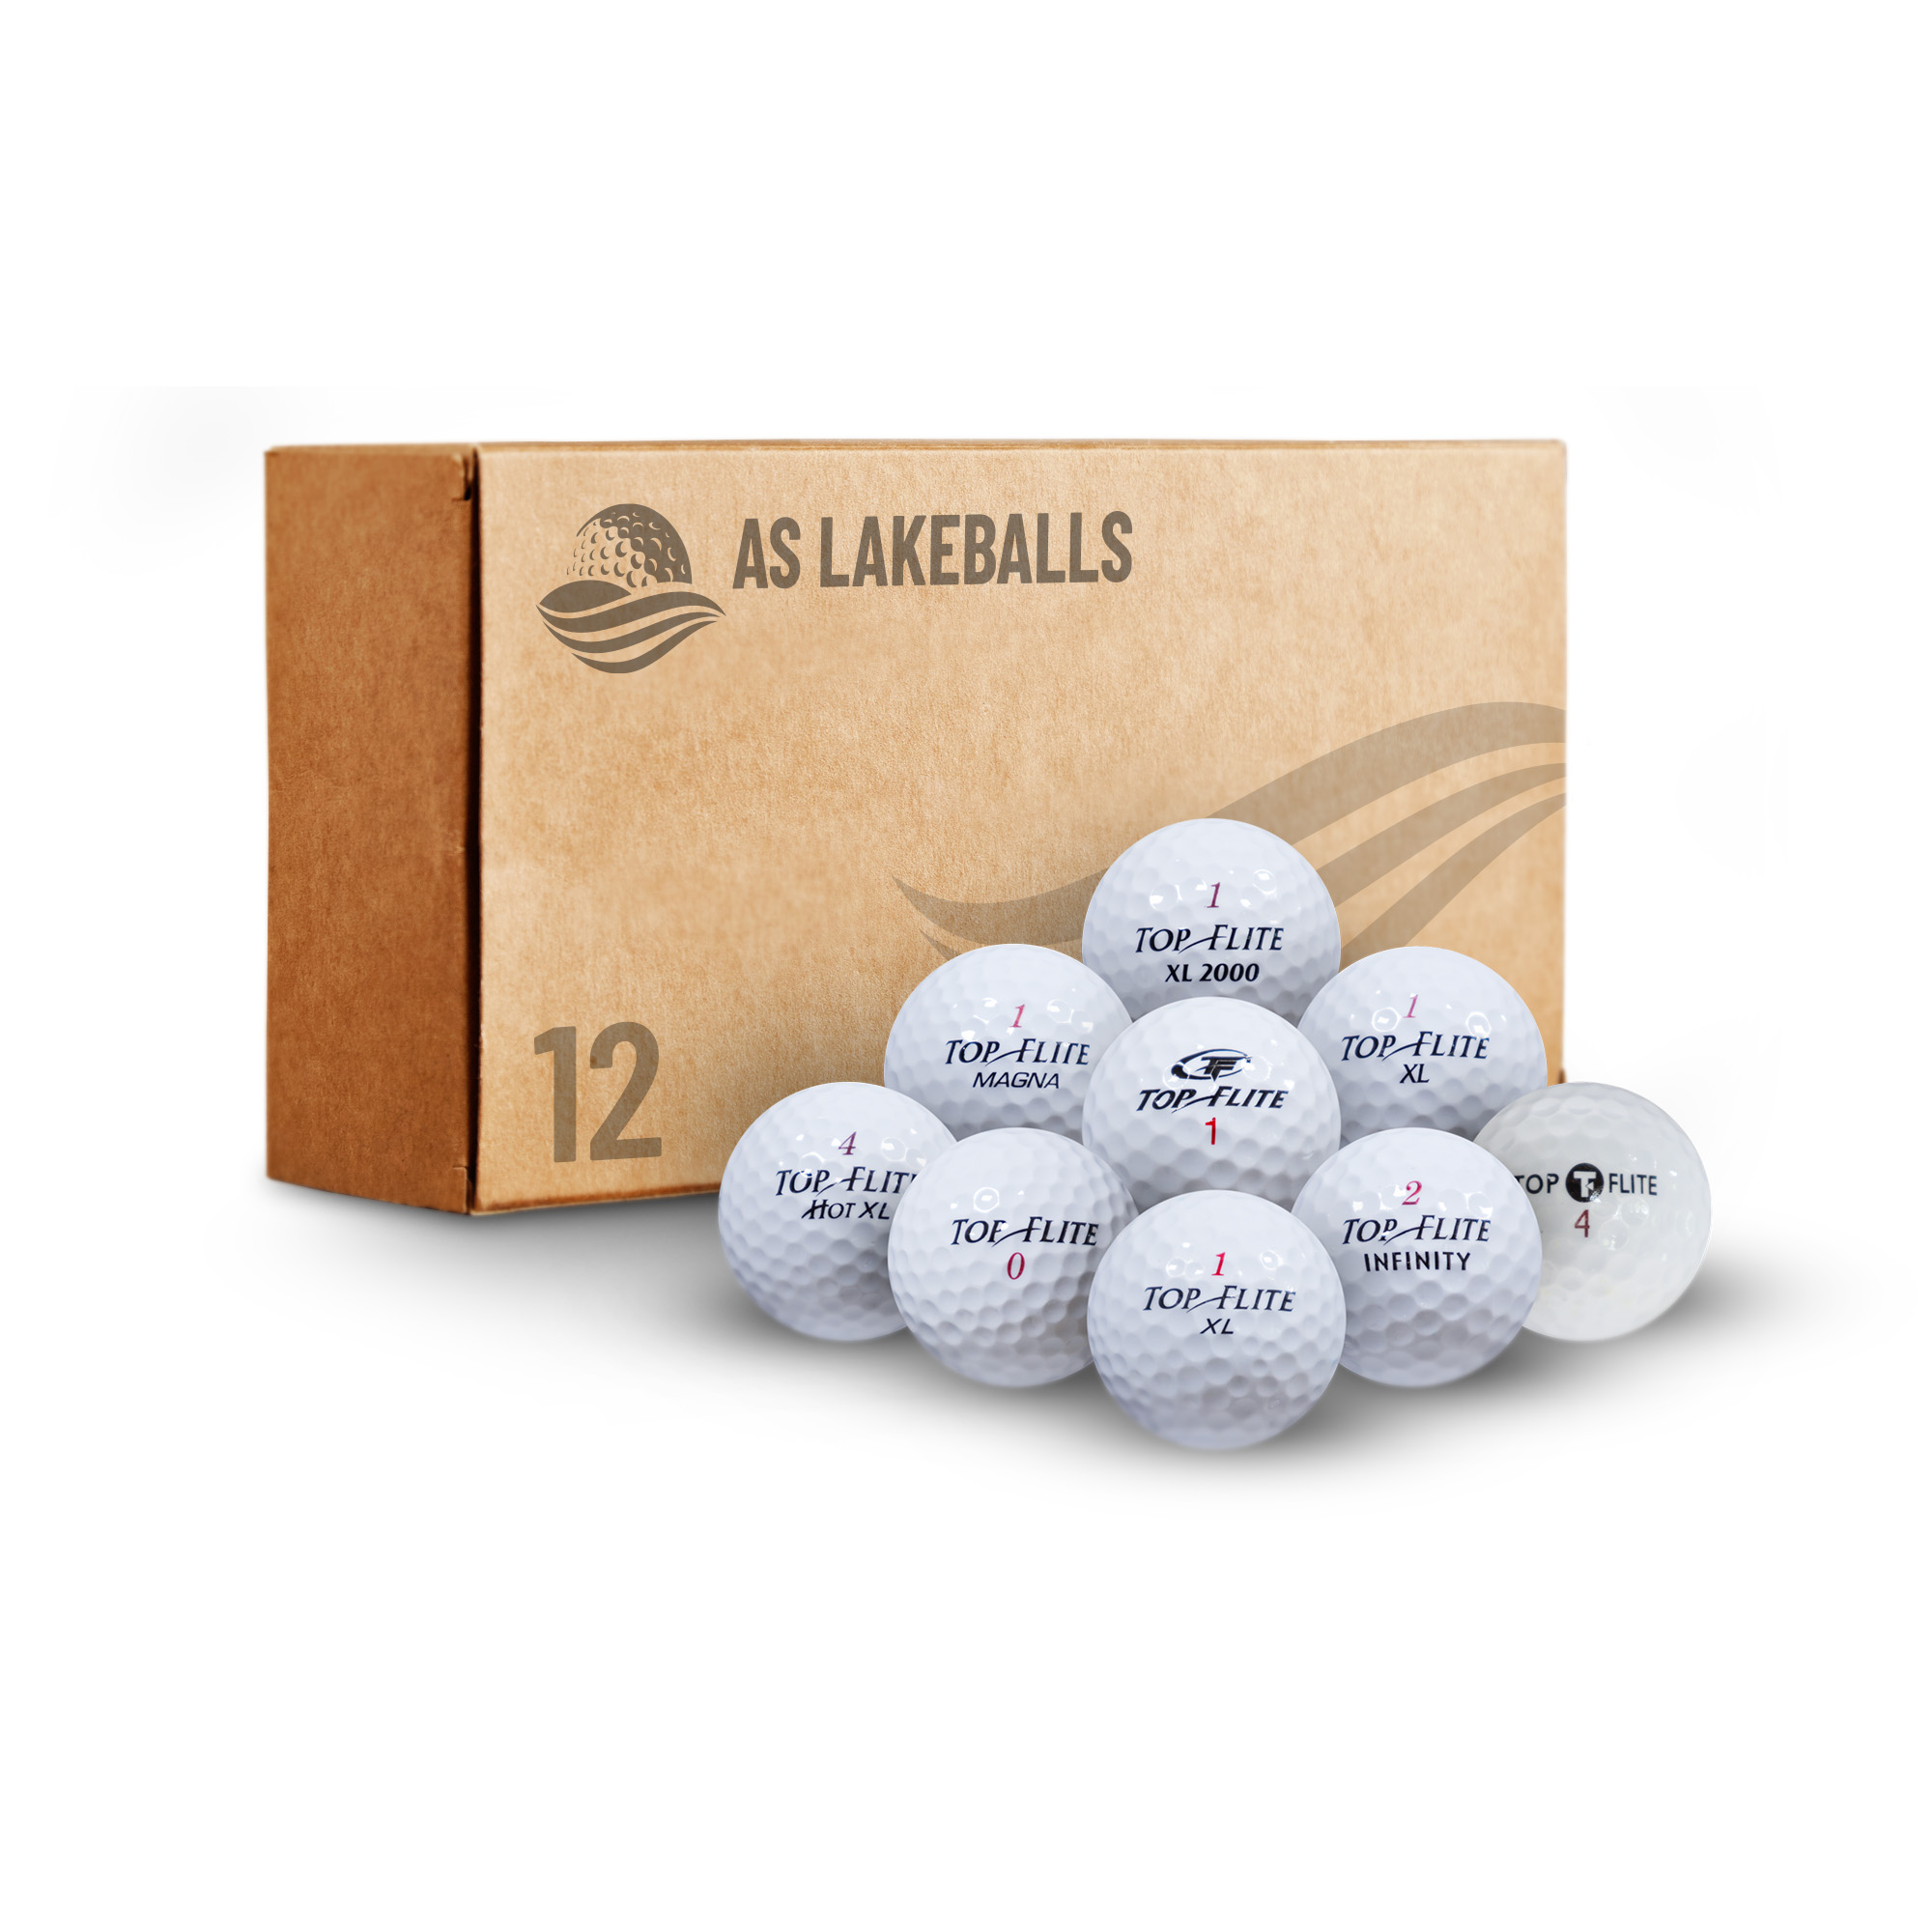 12 Stück Top Flite Mix AA-AAA Lakeballs bei AS Lakeballs günstig kaufen